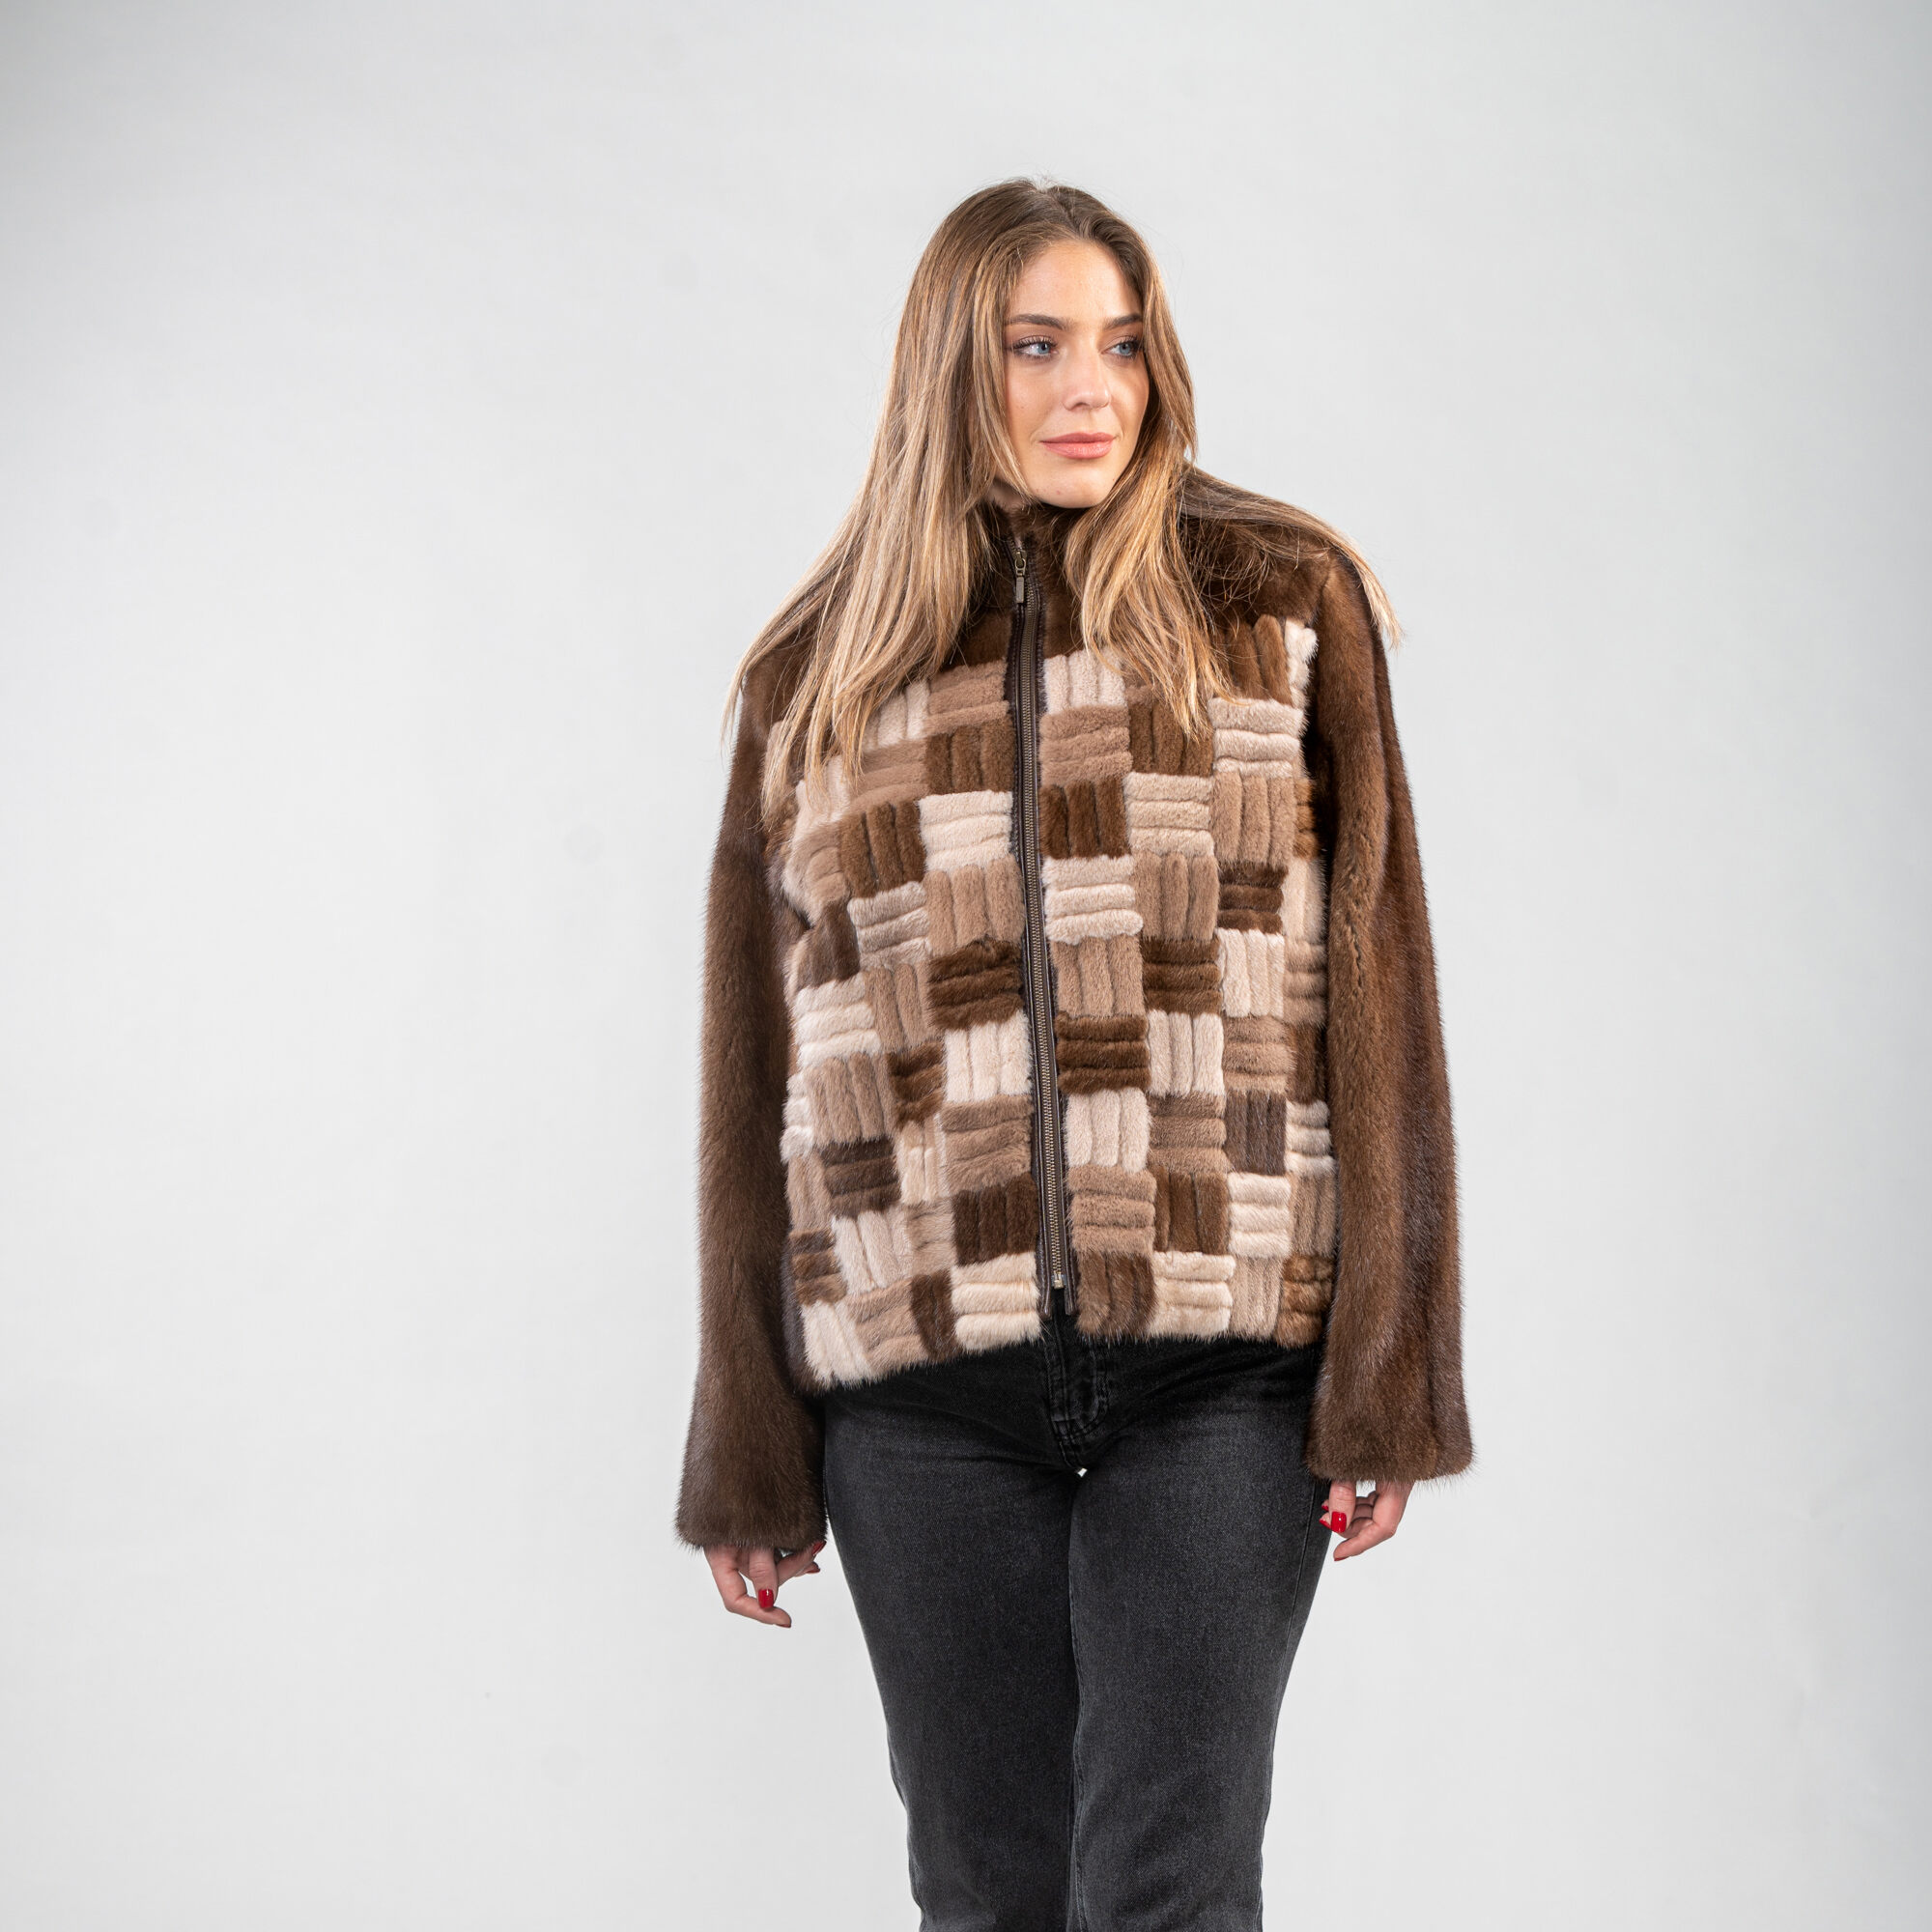 Mink fur jacket in brown color patterns